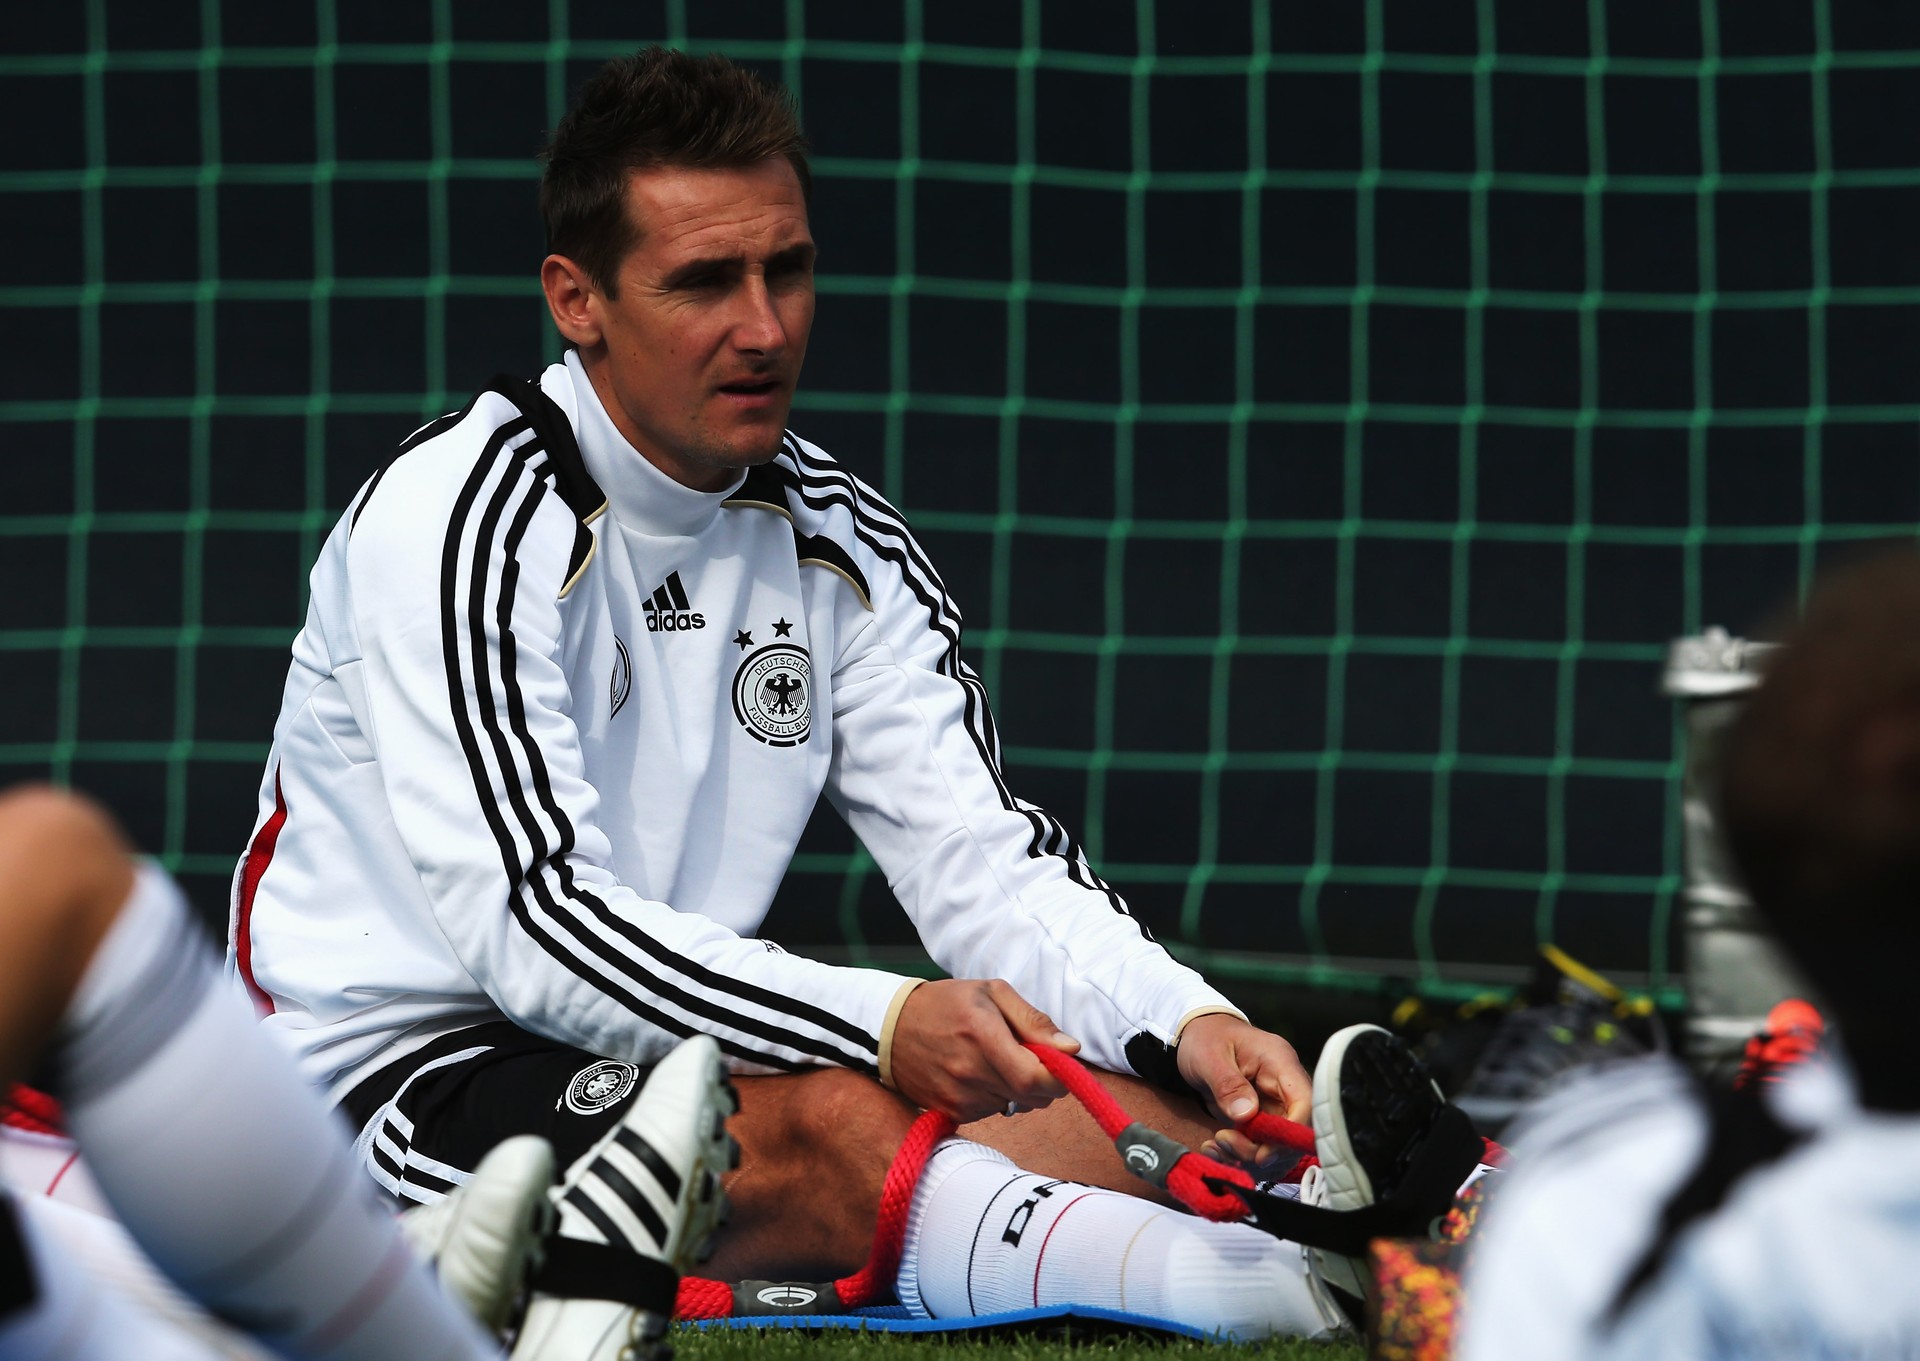 A Copa de 2014 deve ser a última de Klose (Foto: Getty Images)